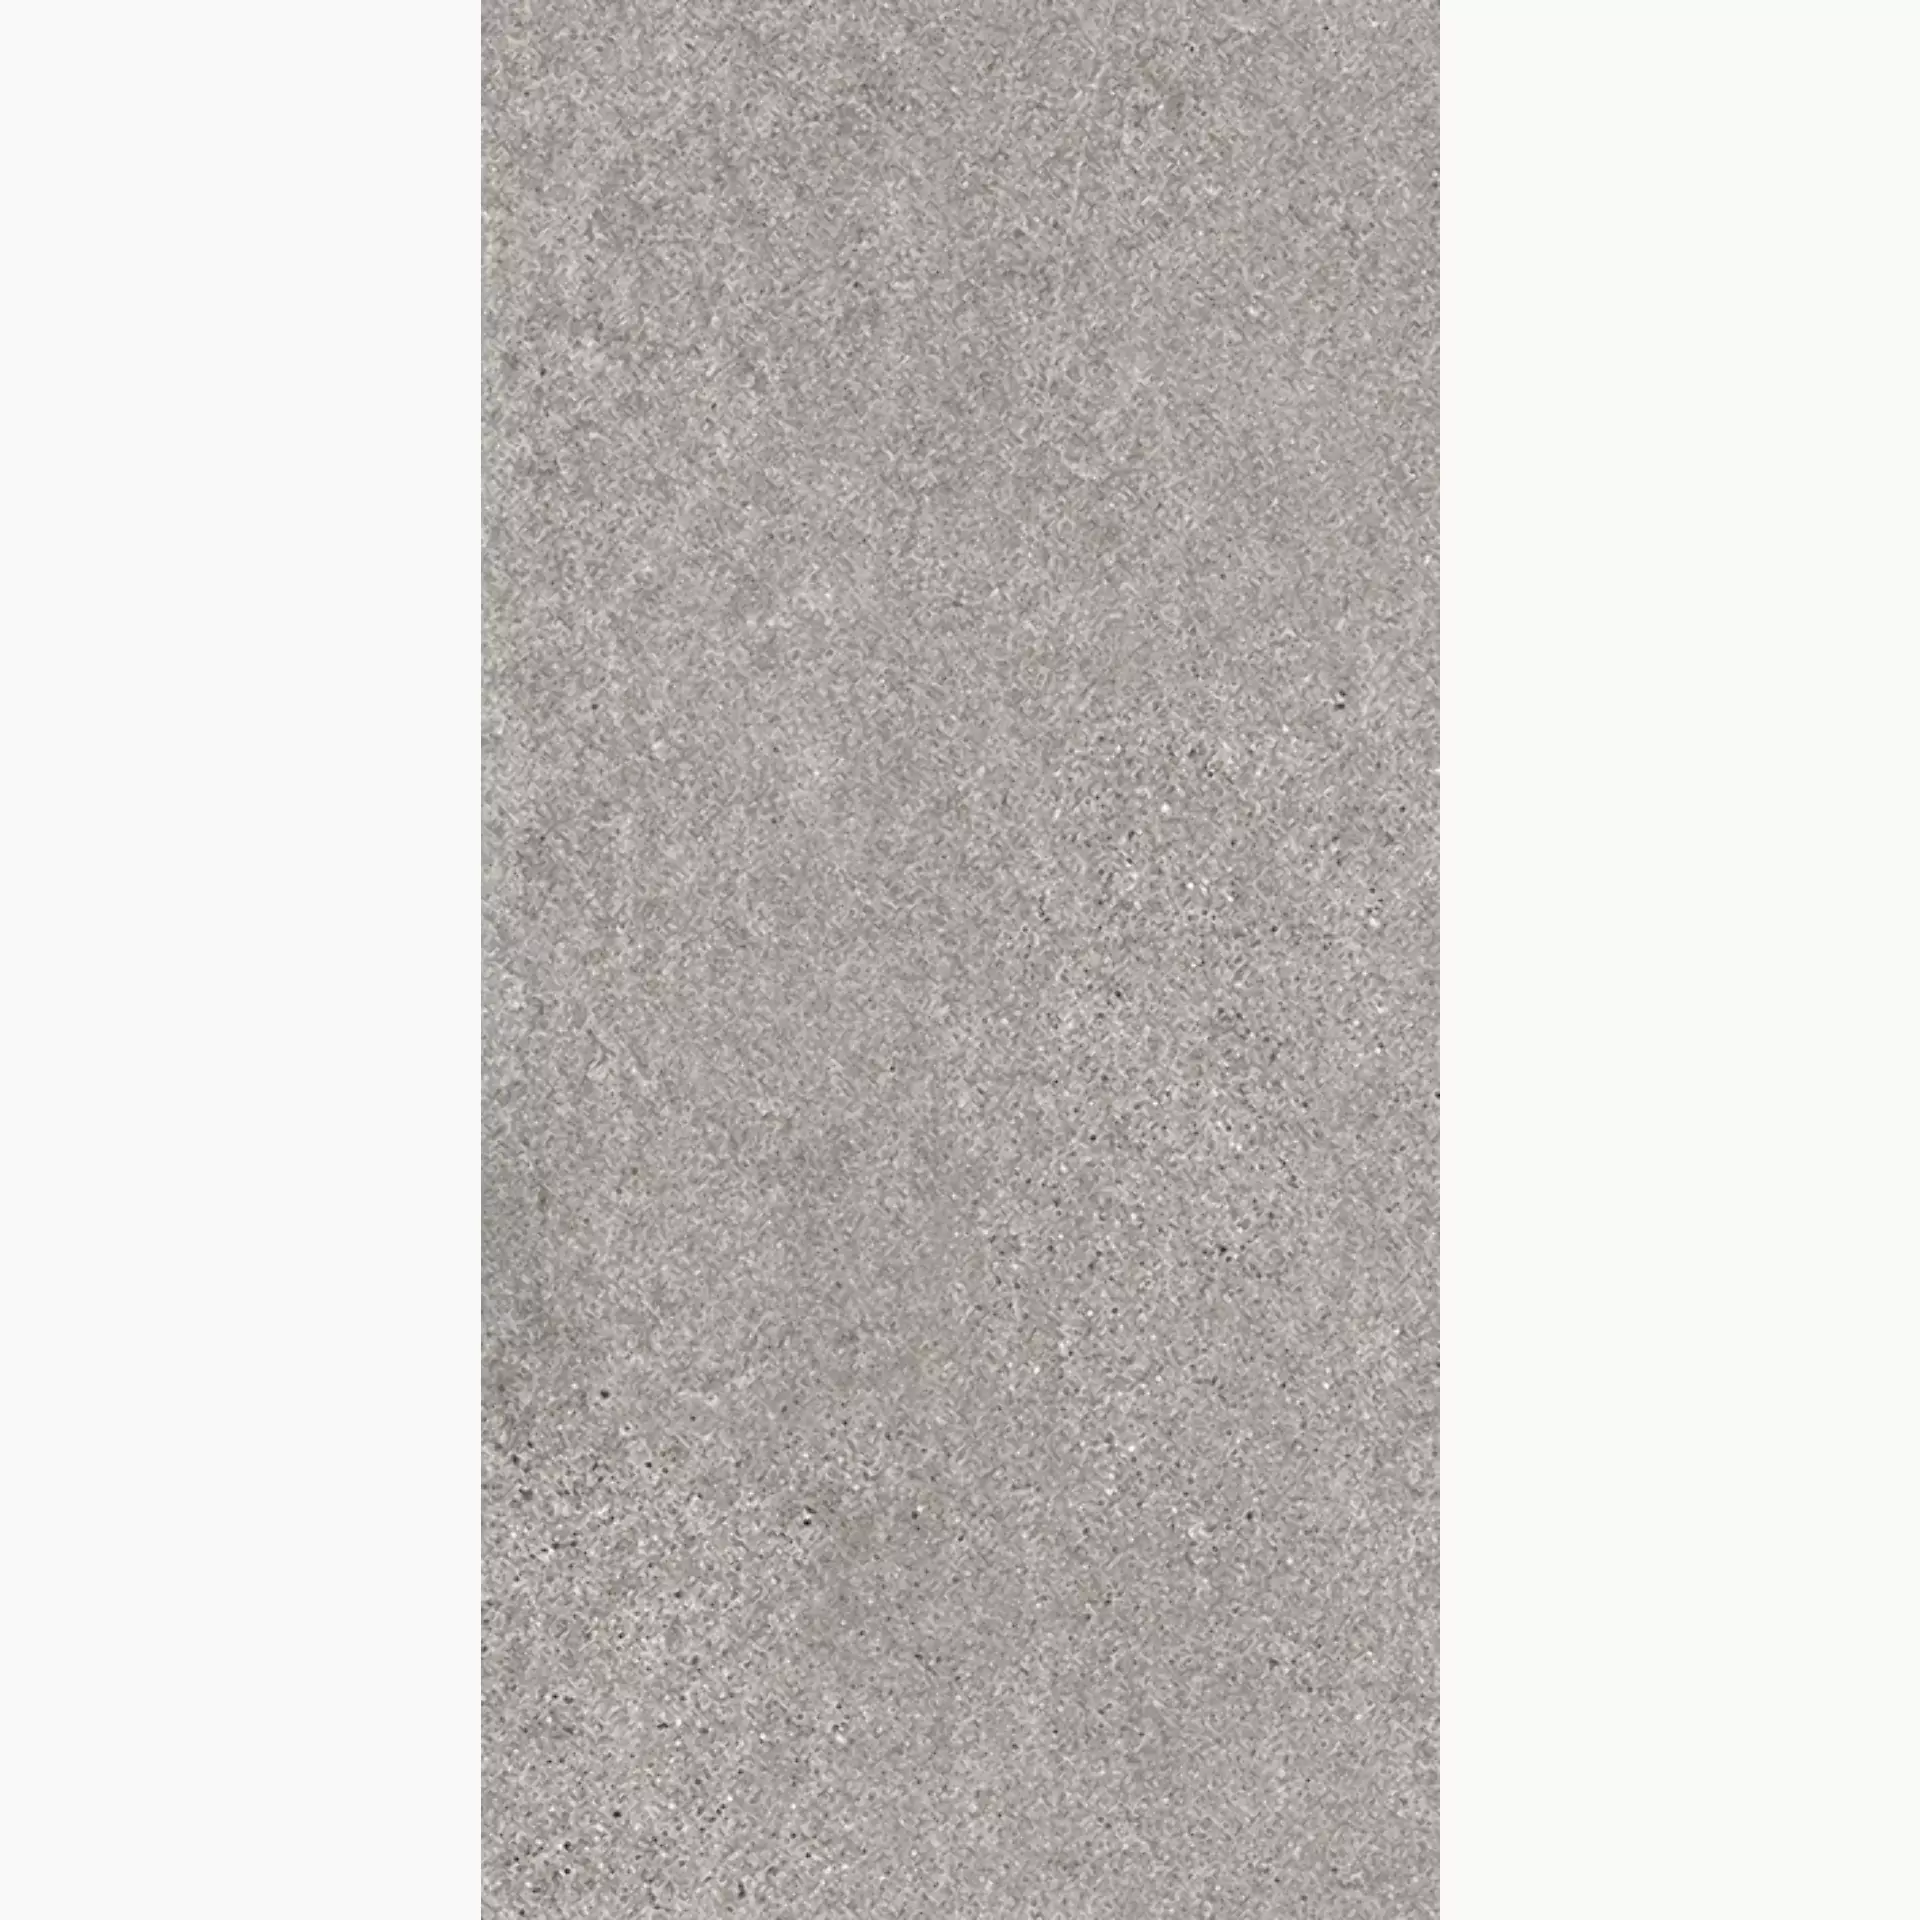 Wandfliese,Bodenfliese Villeroy & Boch Solid Tones Cool Stone Matt Cool Stone 2685-PS60 matt 30x60cm rektifiziert 10mm